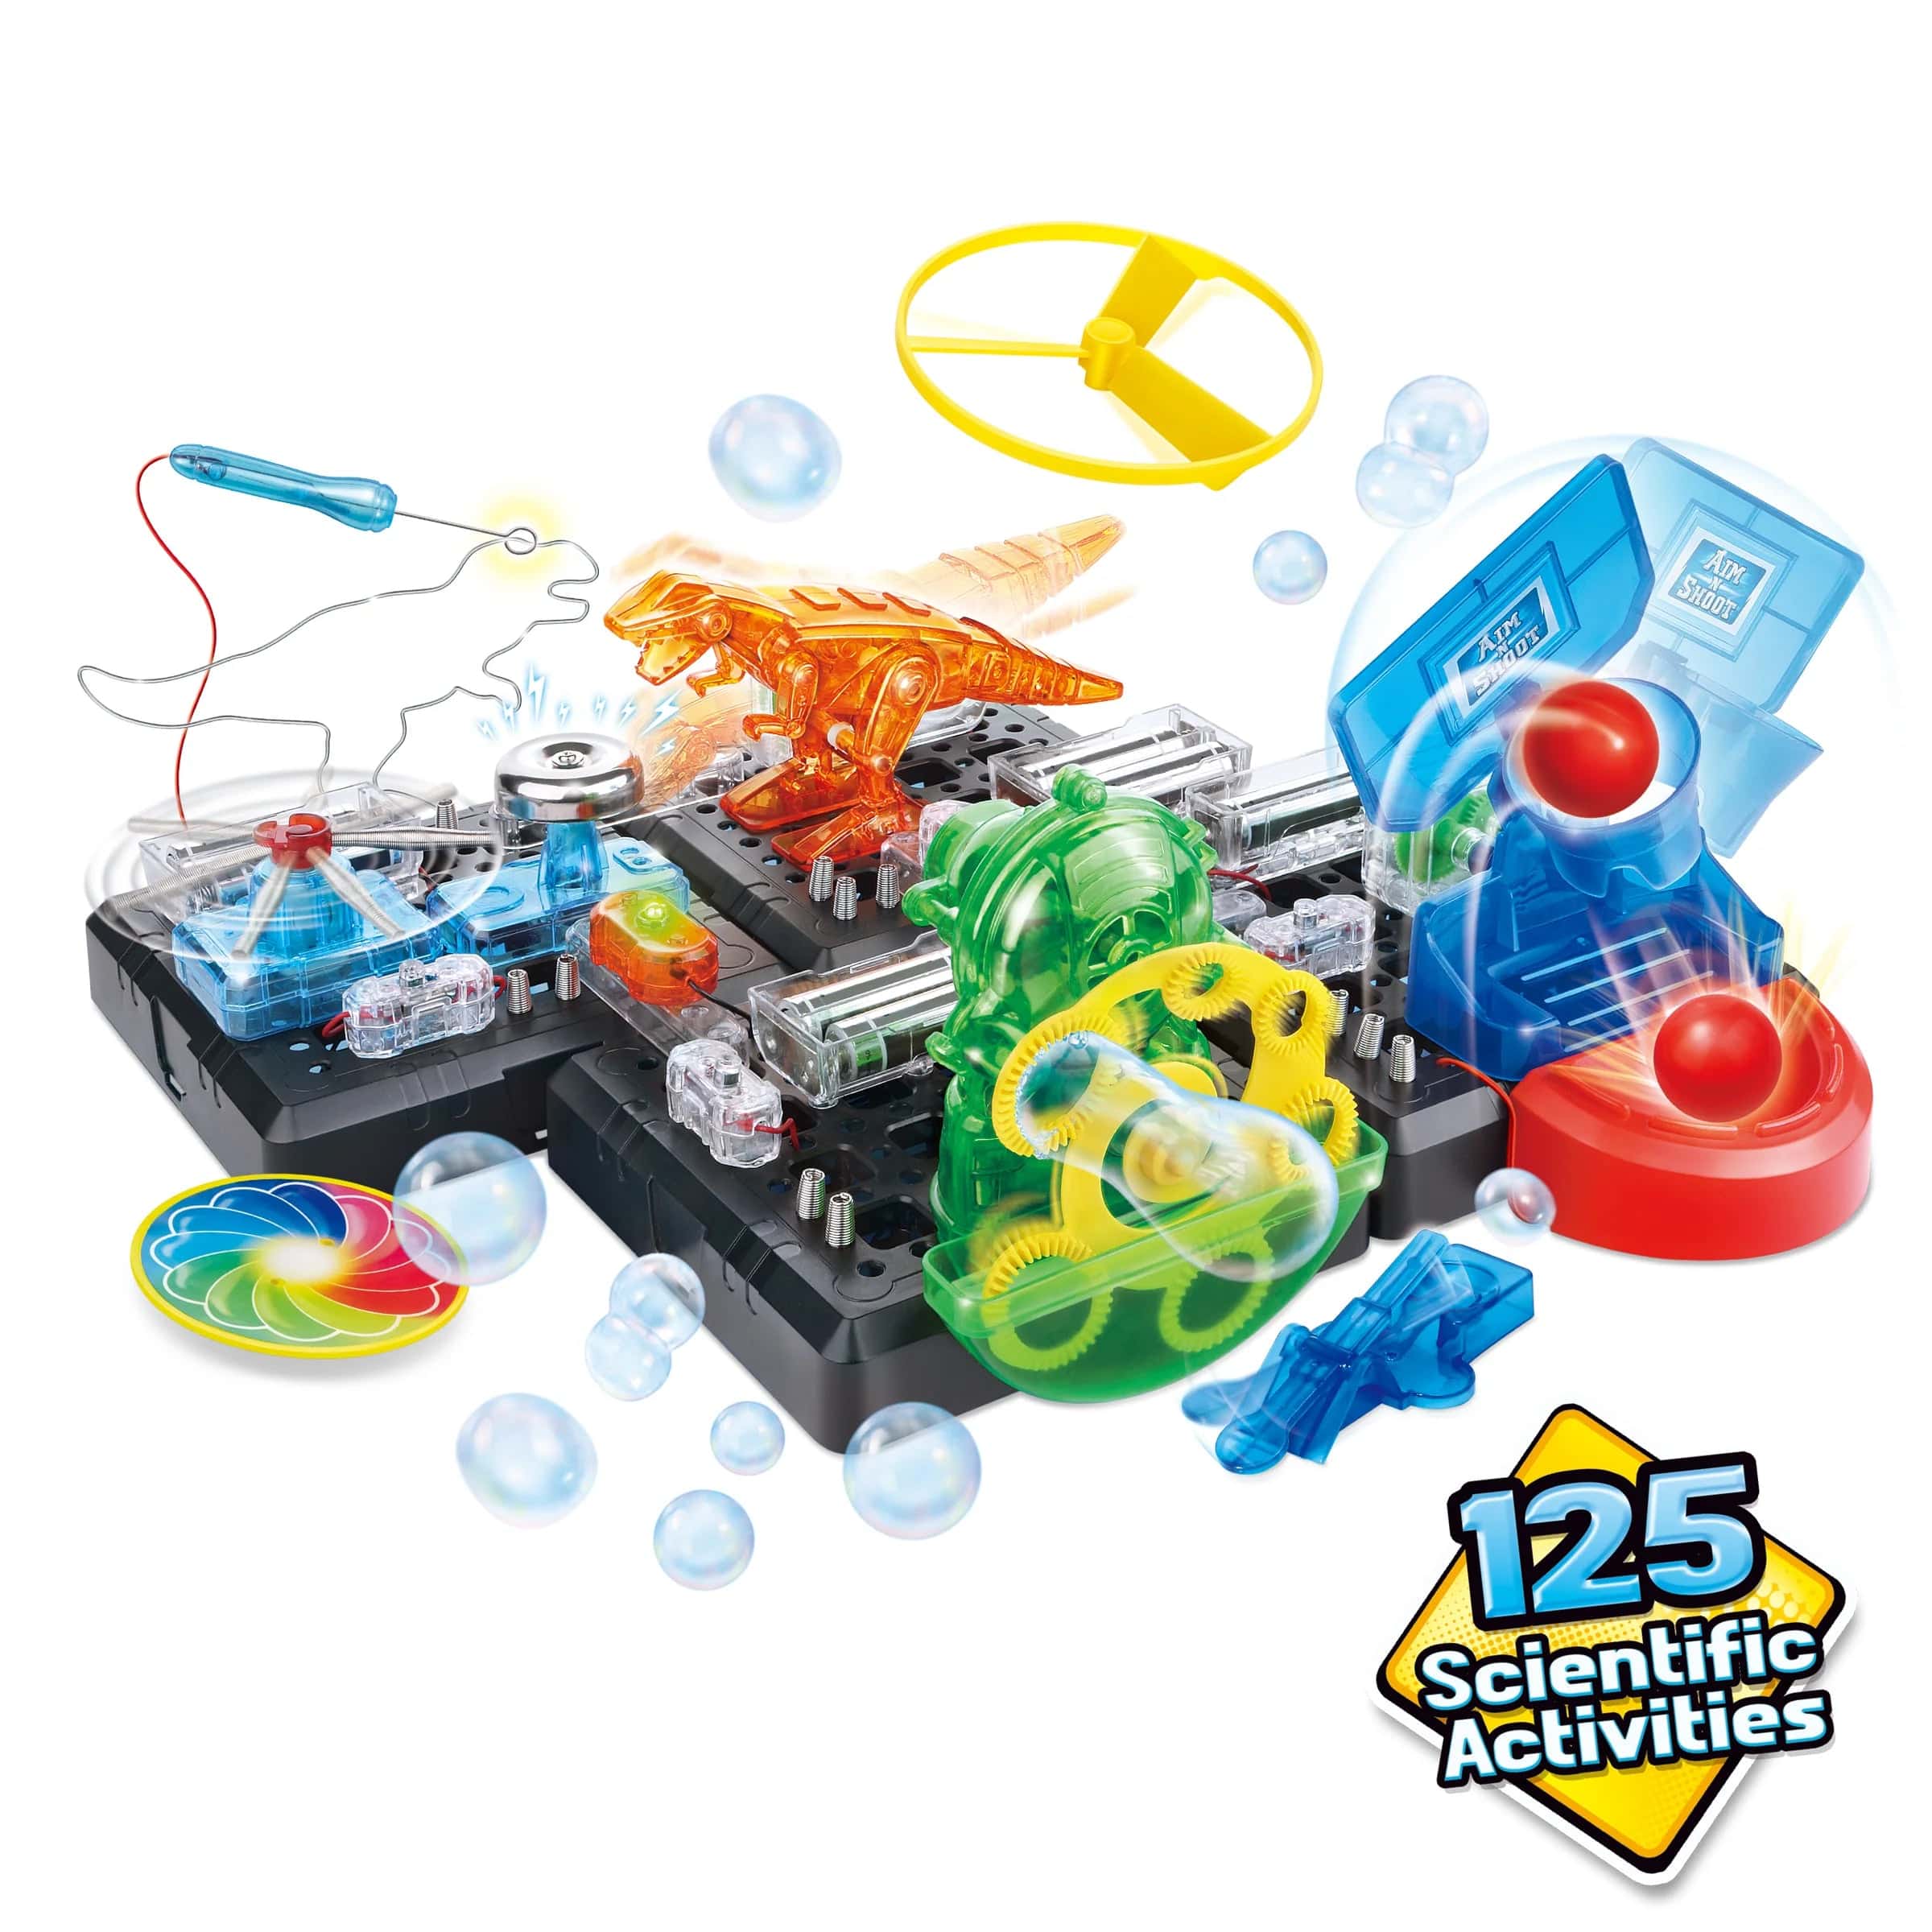 Explore Scientific Toy Explore Science 125 Scientific Challenges Set - STEM - 88-90175